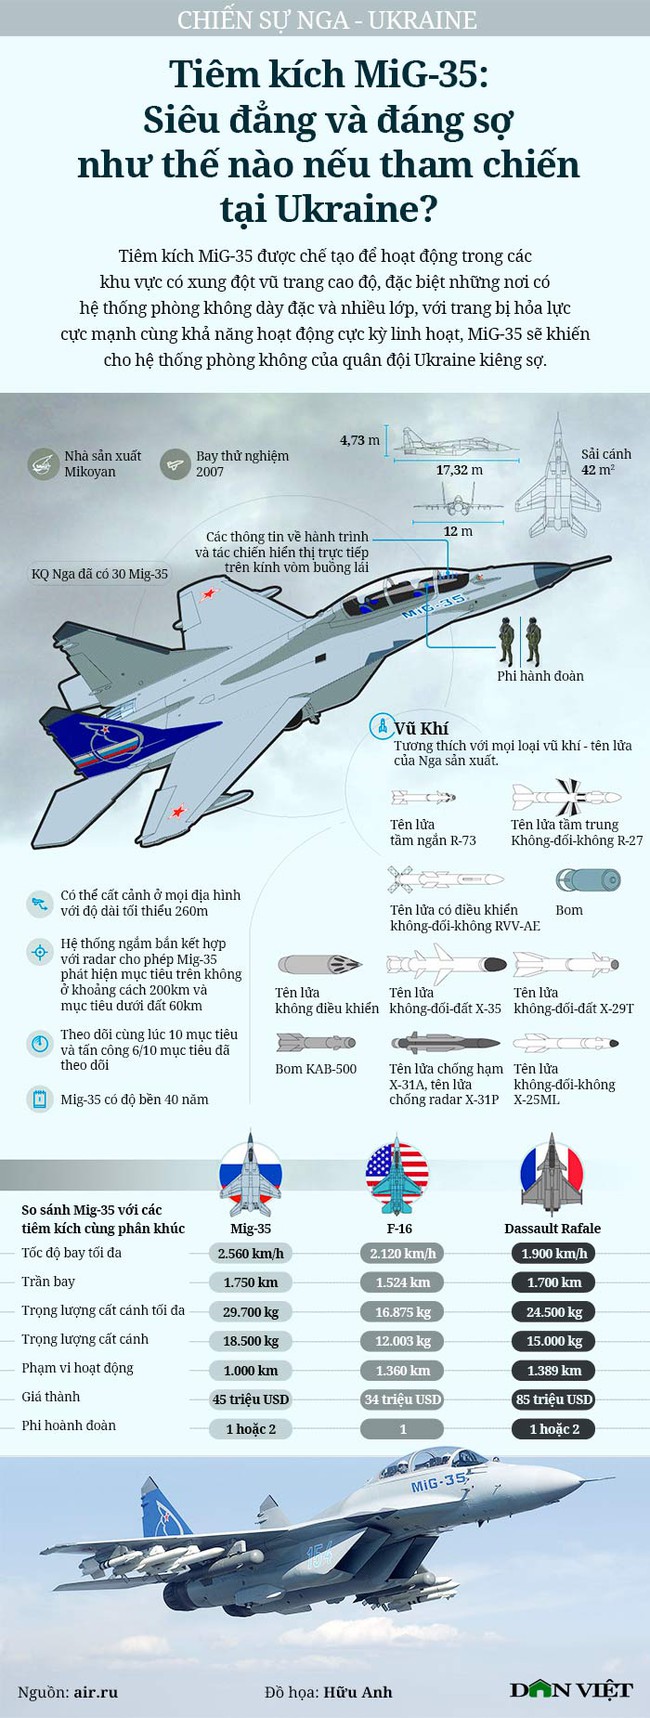 Tiêm kích MiG-35: Siêu đẳng và đáng sợ như thế nào nếu tham chiến tại Ukraine? - Ảnh 1.